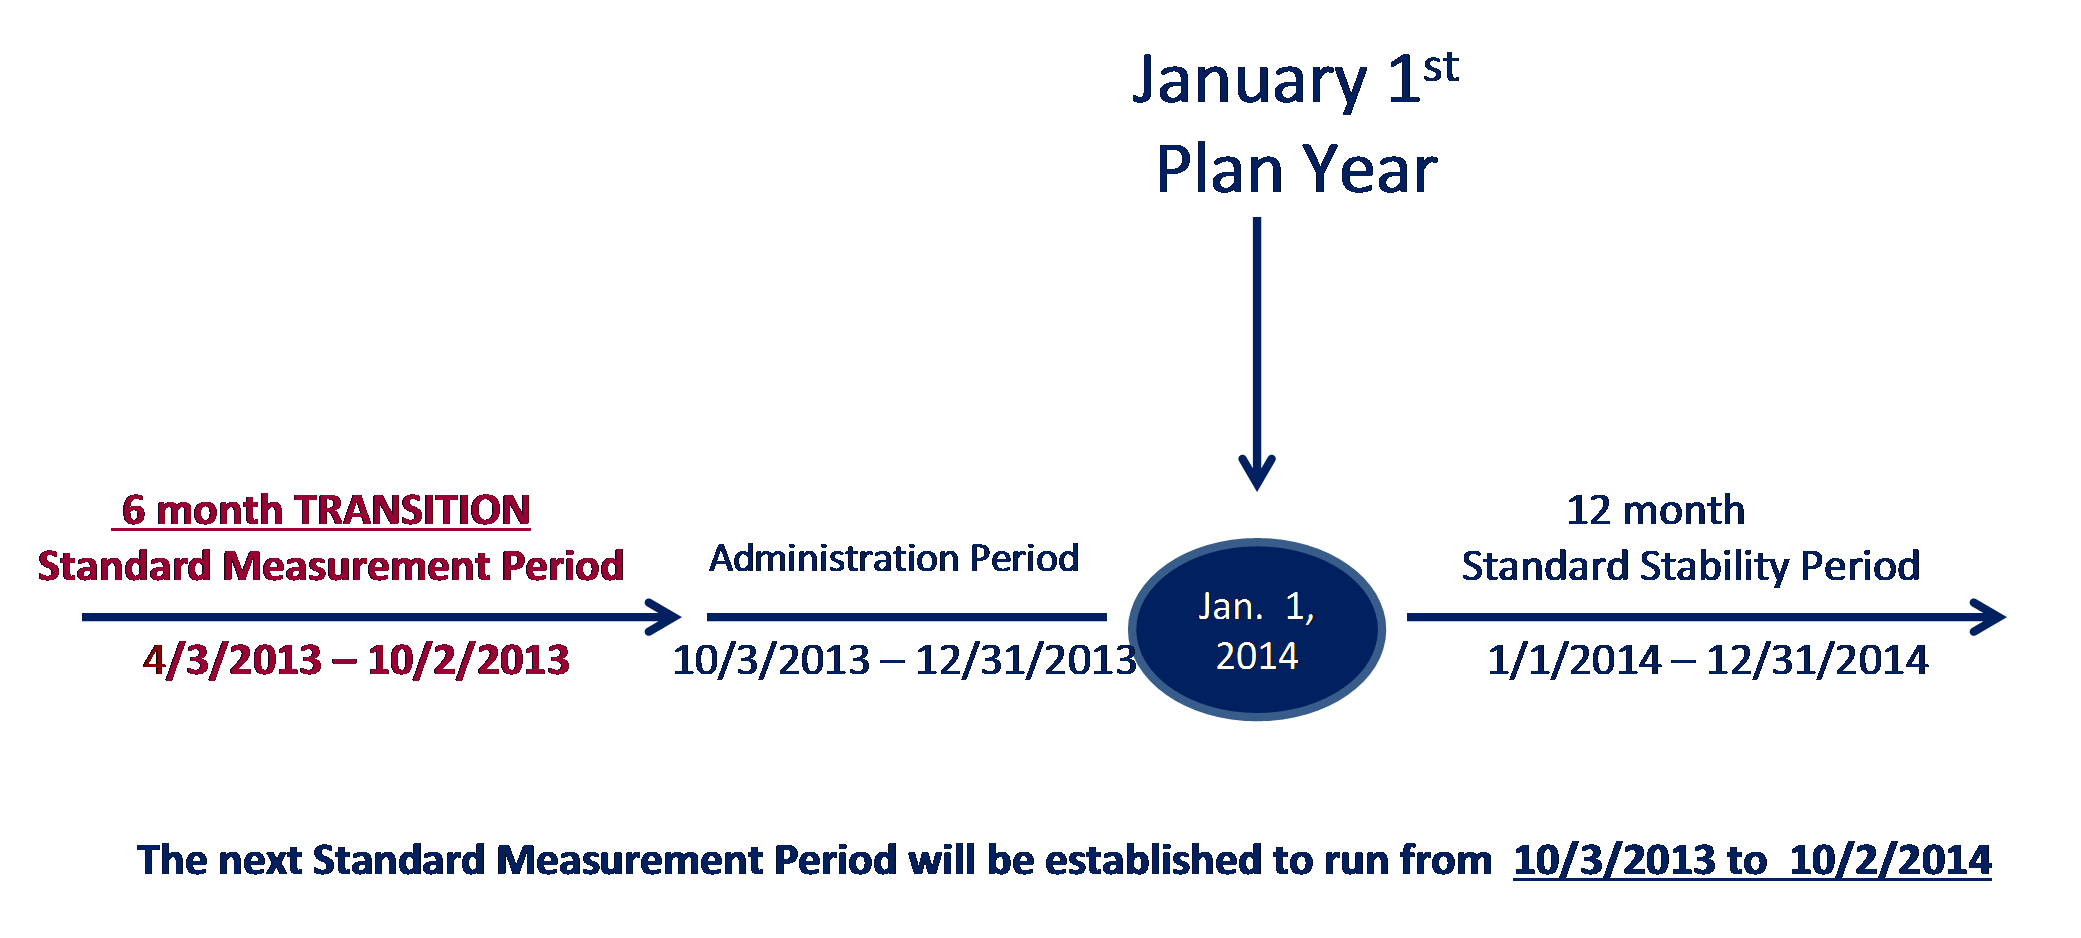 Plan Year 5 